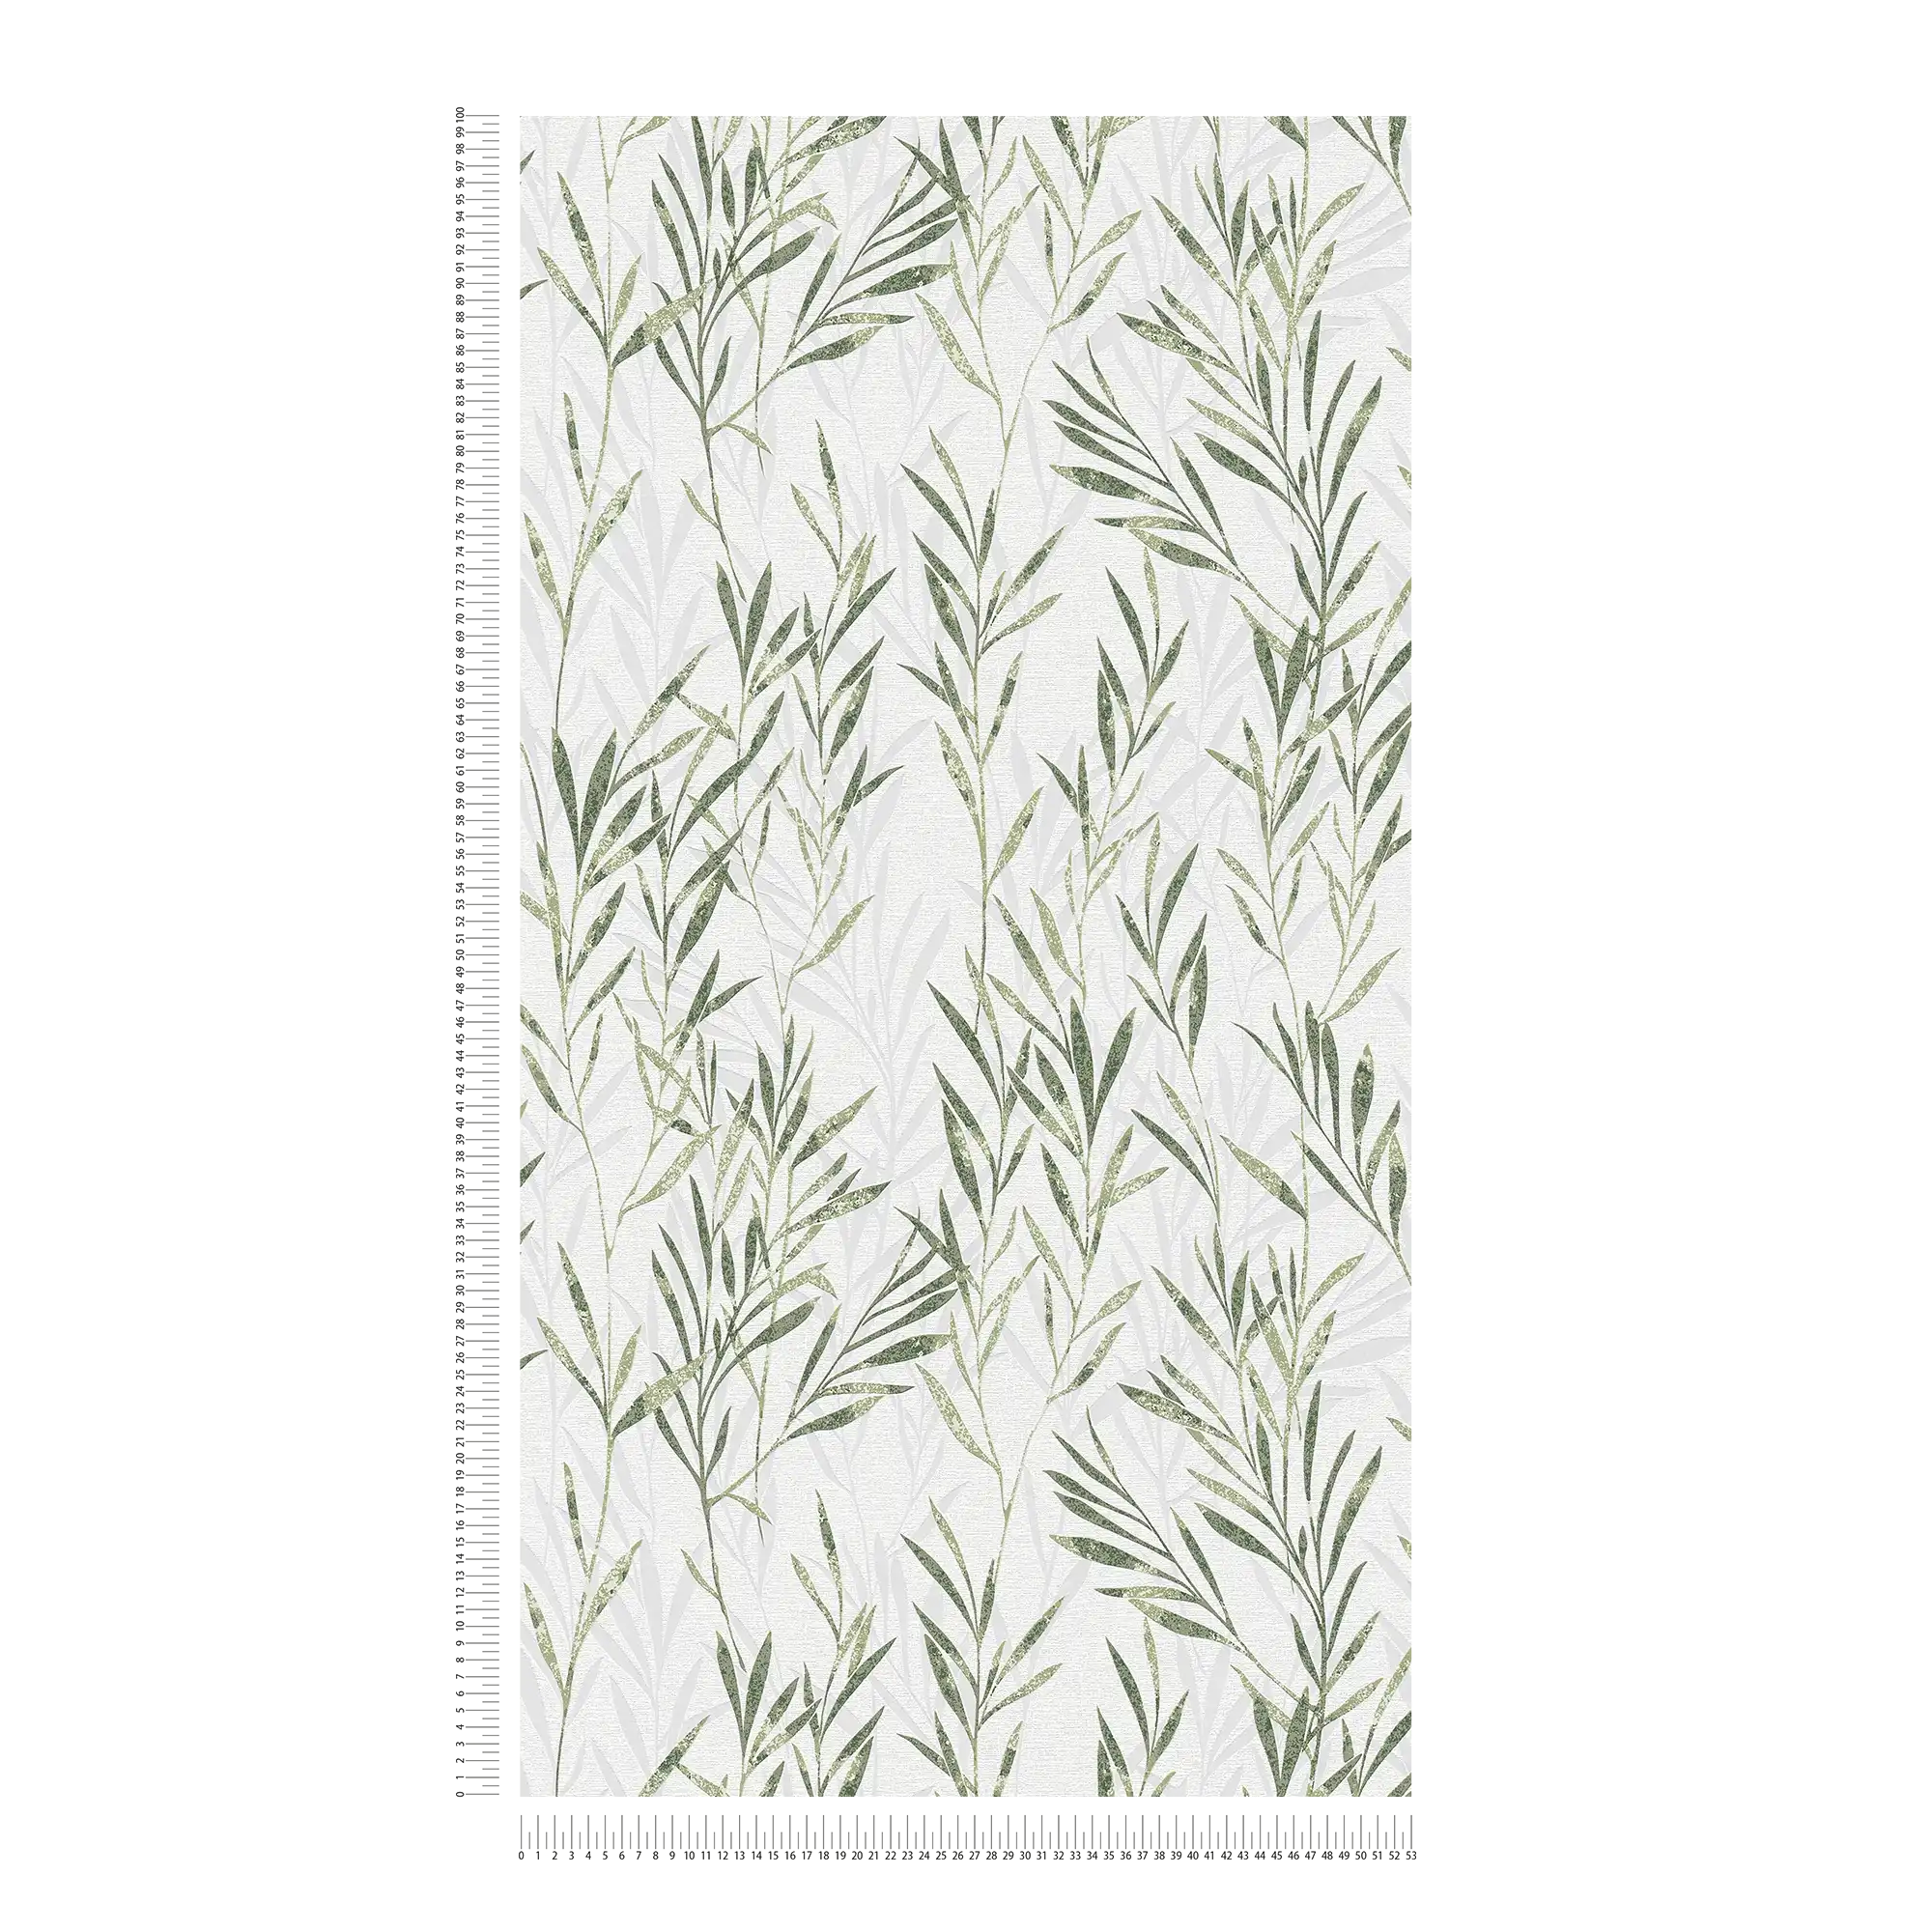             Vliesbehang bladmotief & rankenpatroon - groen, wit
        